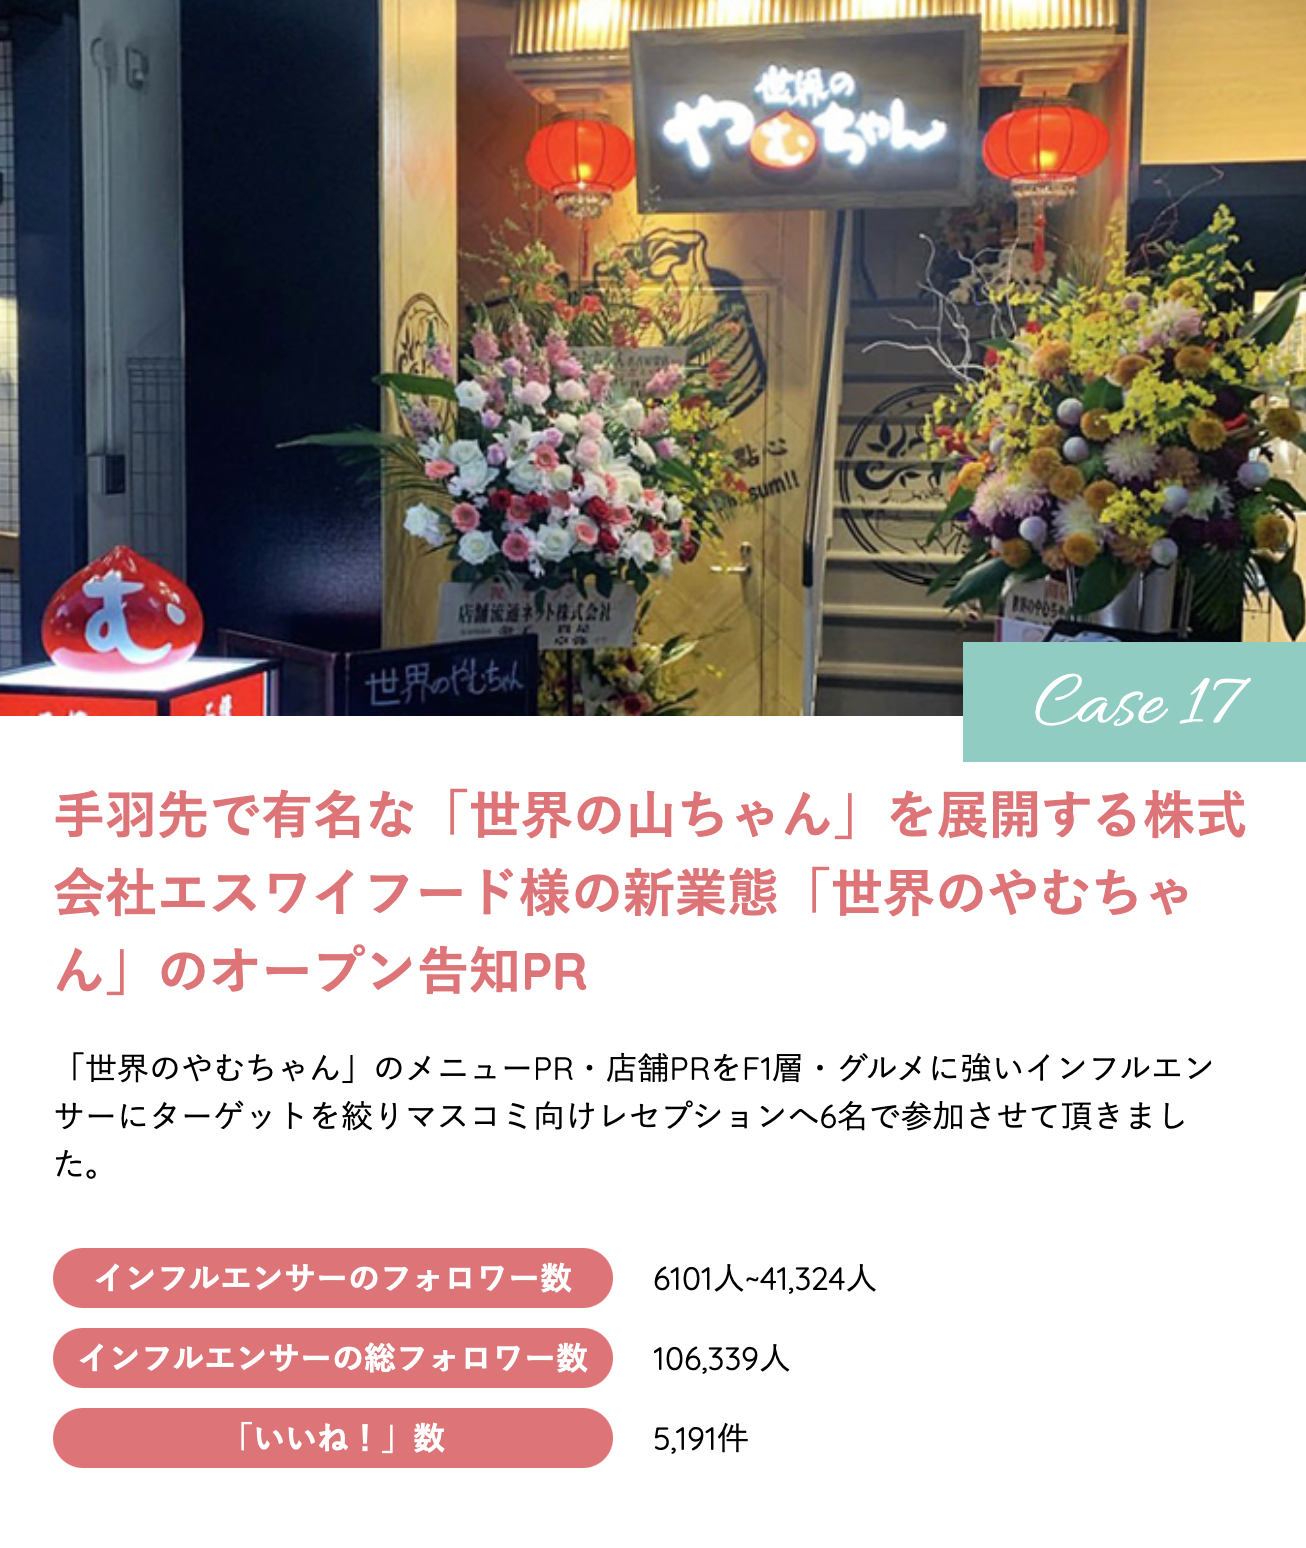 世界のやむちゃん様「オープン告知PR」 | 名古屋のインフルエンサーを使ったプロモーション、マーケティングならnagosta!（ナゴスタ！）